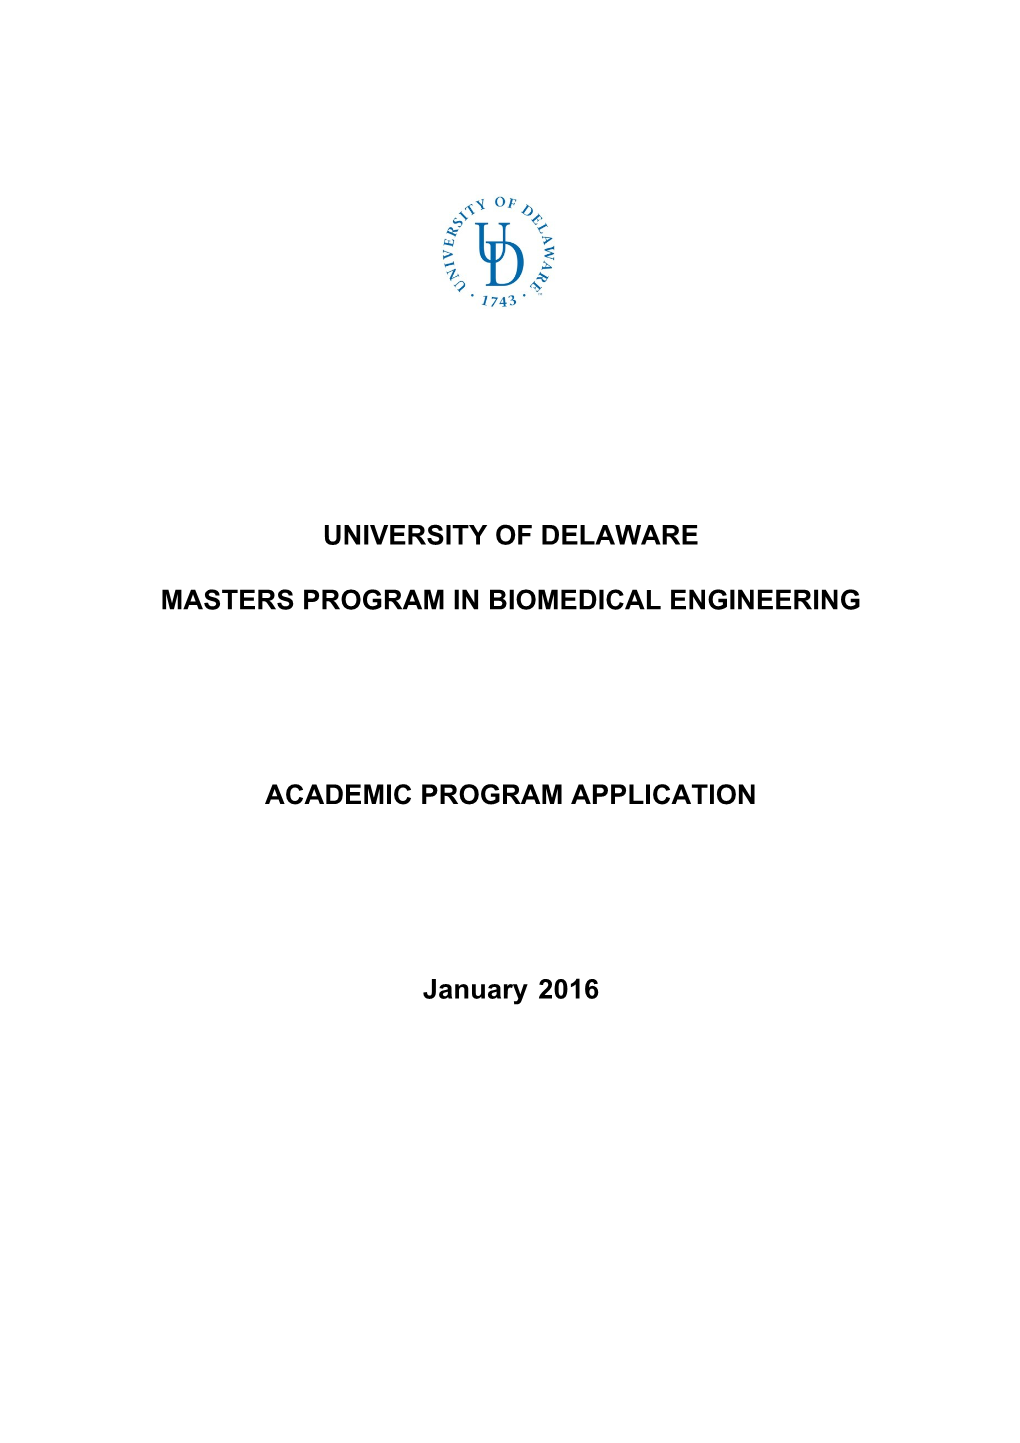 Masters Program in Biomedical Engineering